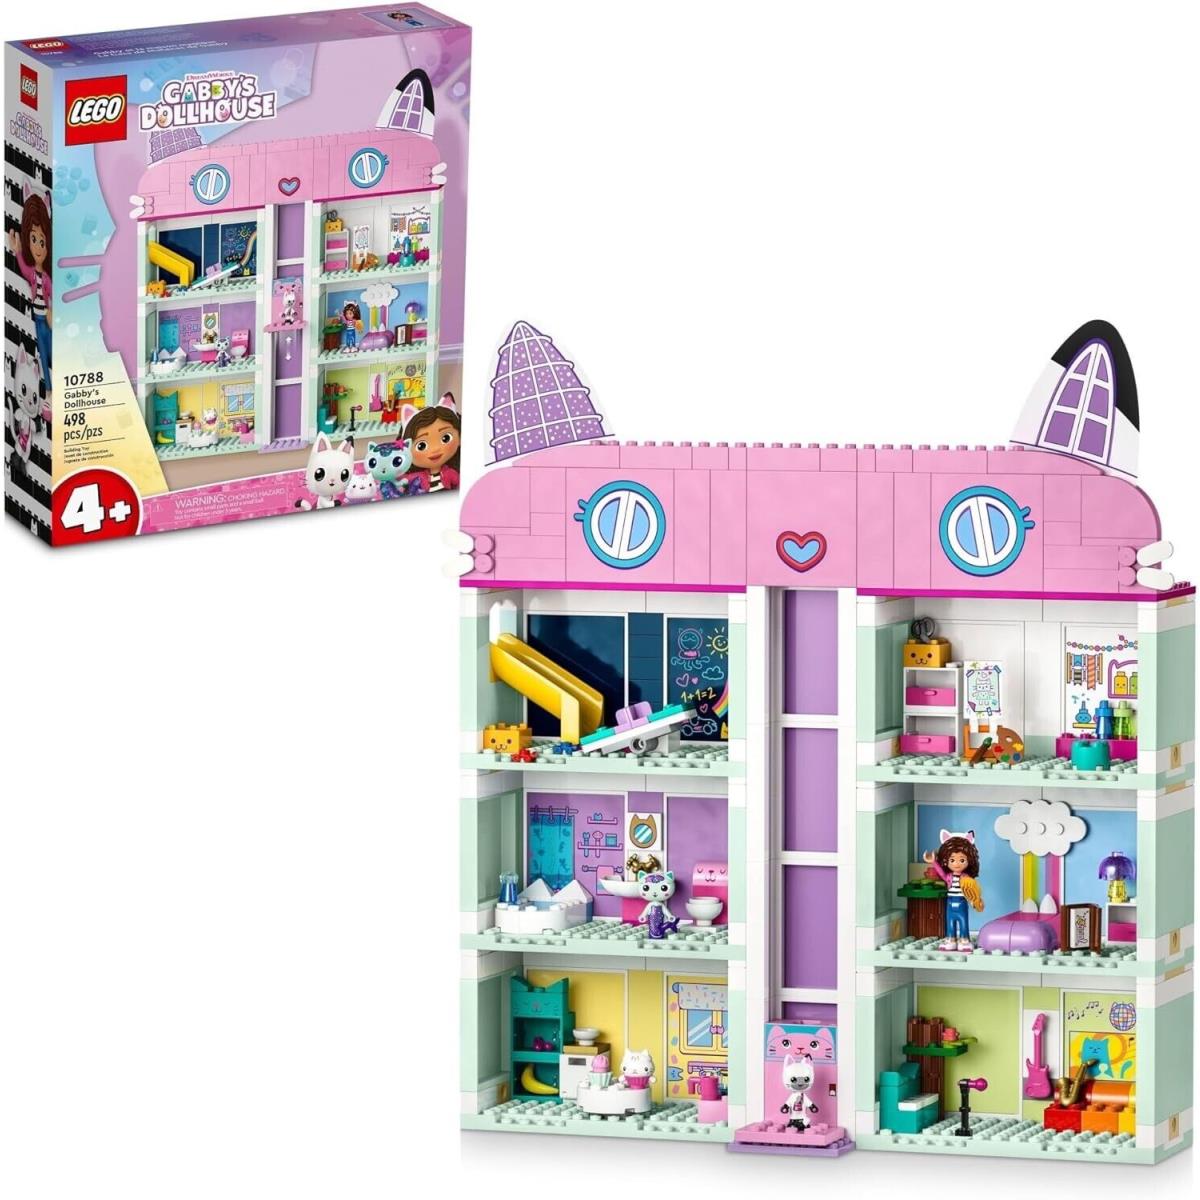 Lego Gabby S Dollhouse: Gabby`s Dollhouse 10788